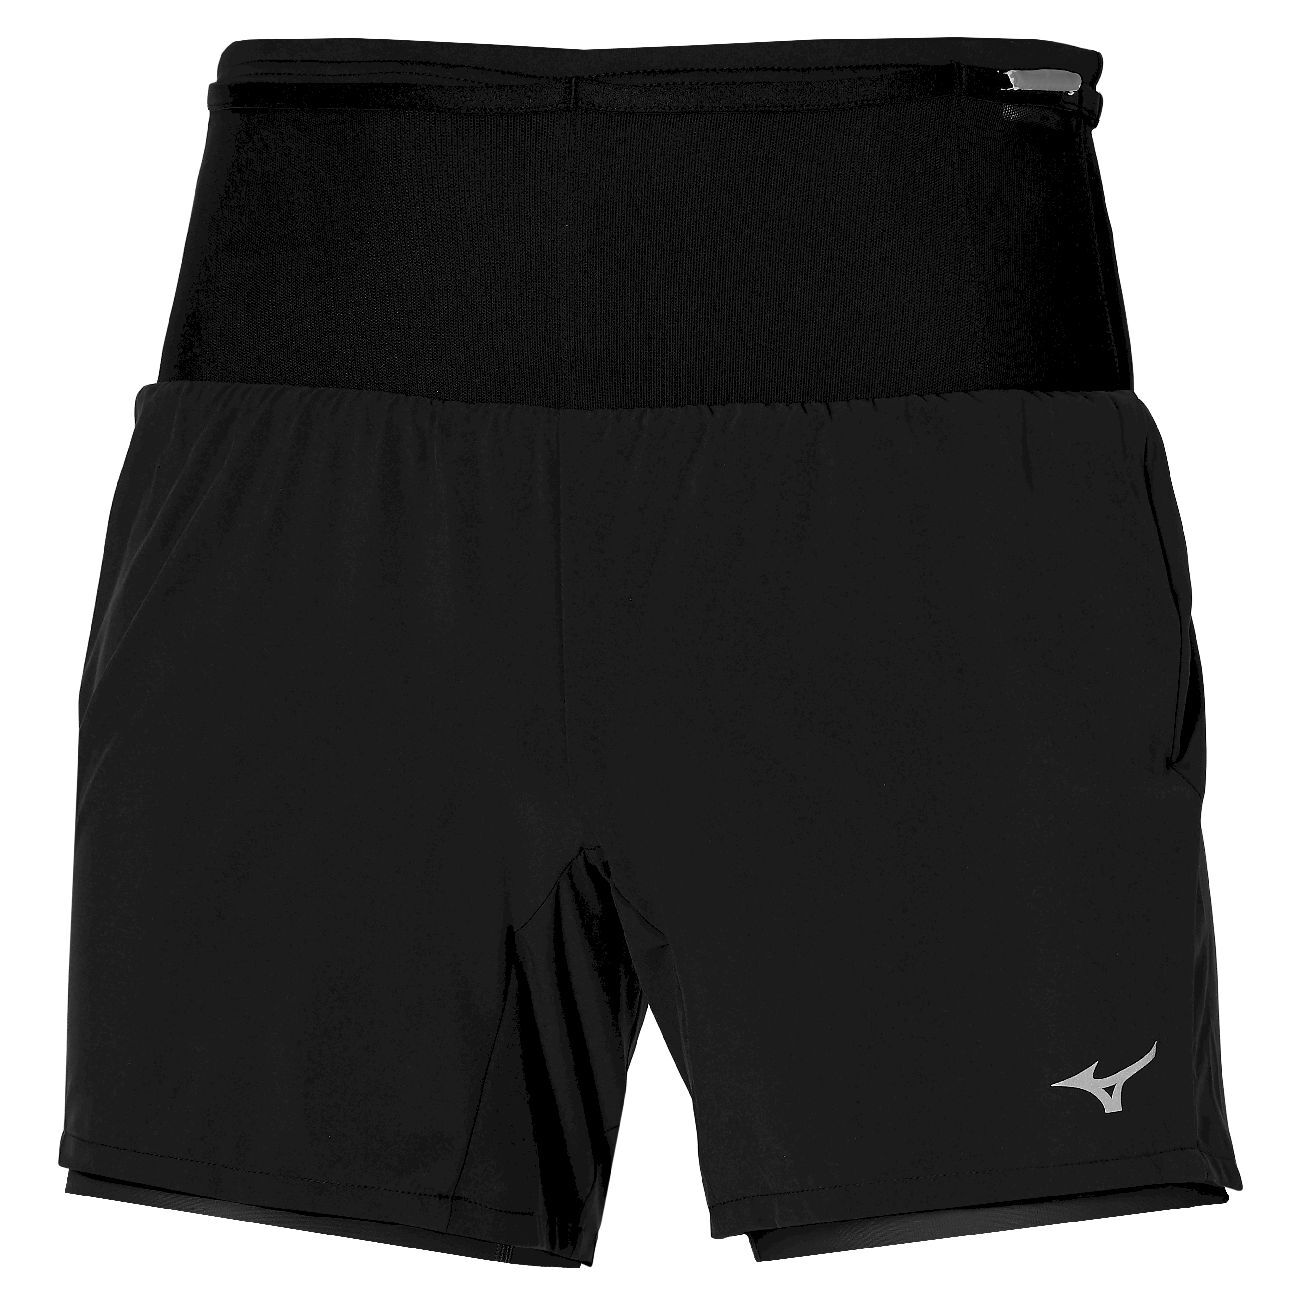 Mizuno Multi Pocket 7.5 2In1 Short - Pantalones cortos de running - Hombre